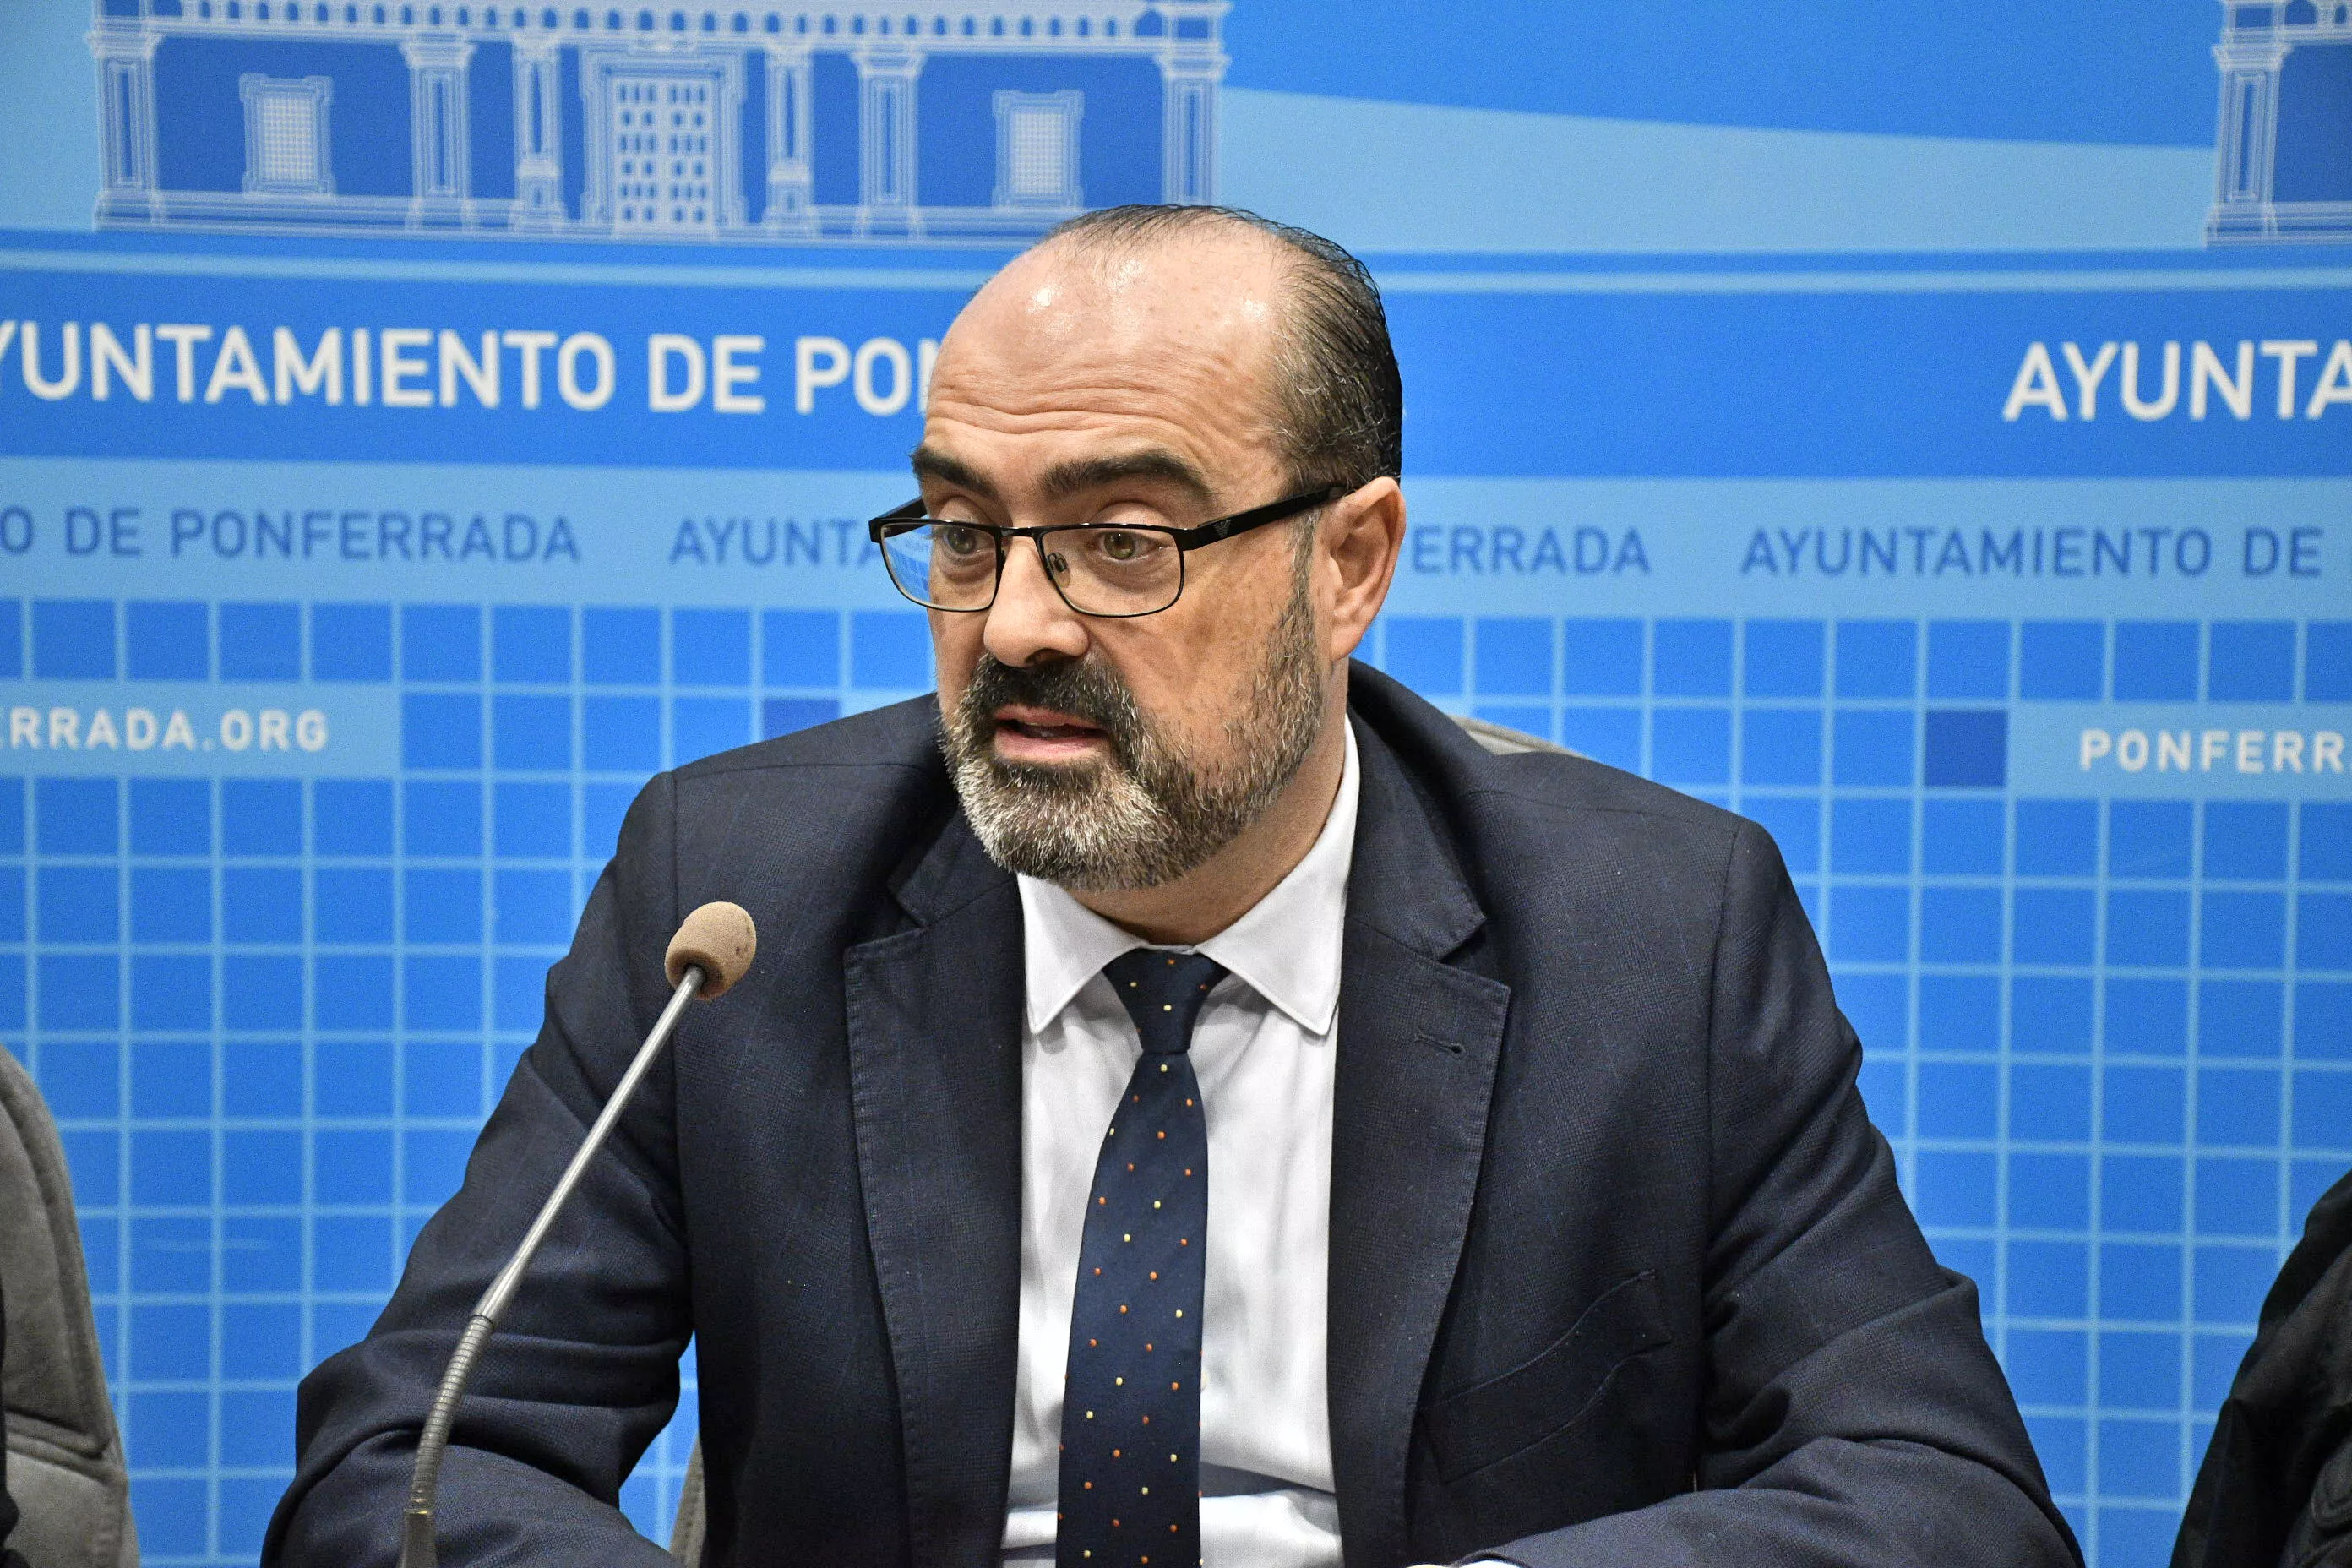 El alcalde de Ponferrada asegura que convocará a los hosteleros para dialogar antes de realizar cambios en la normativa de terrazas